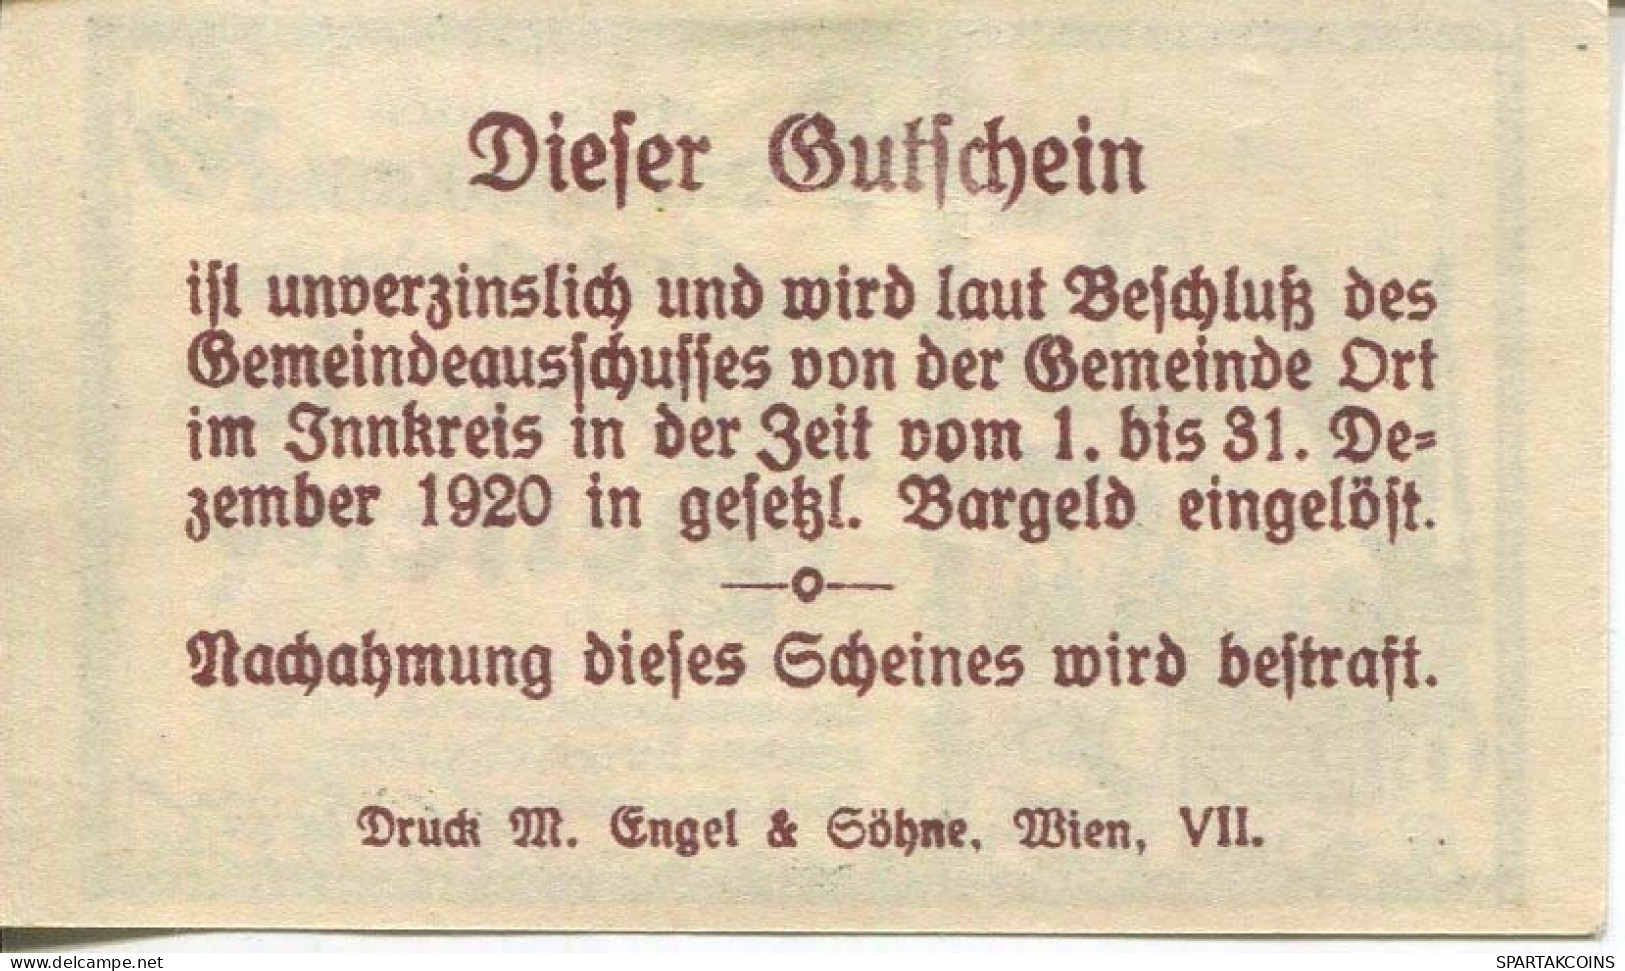 20 HELLER 1920 Stadt ORT IM INNKREIS Oberösterreich Österreich Notgeld Papiergeld Banknote #PL744 - [11] Local Banknote Issues